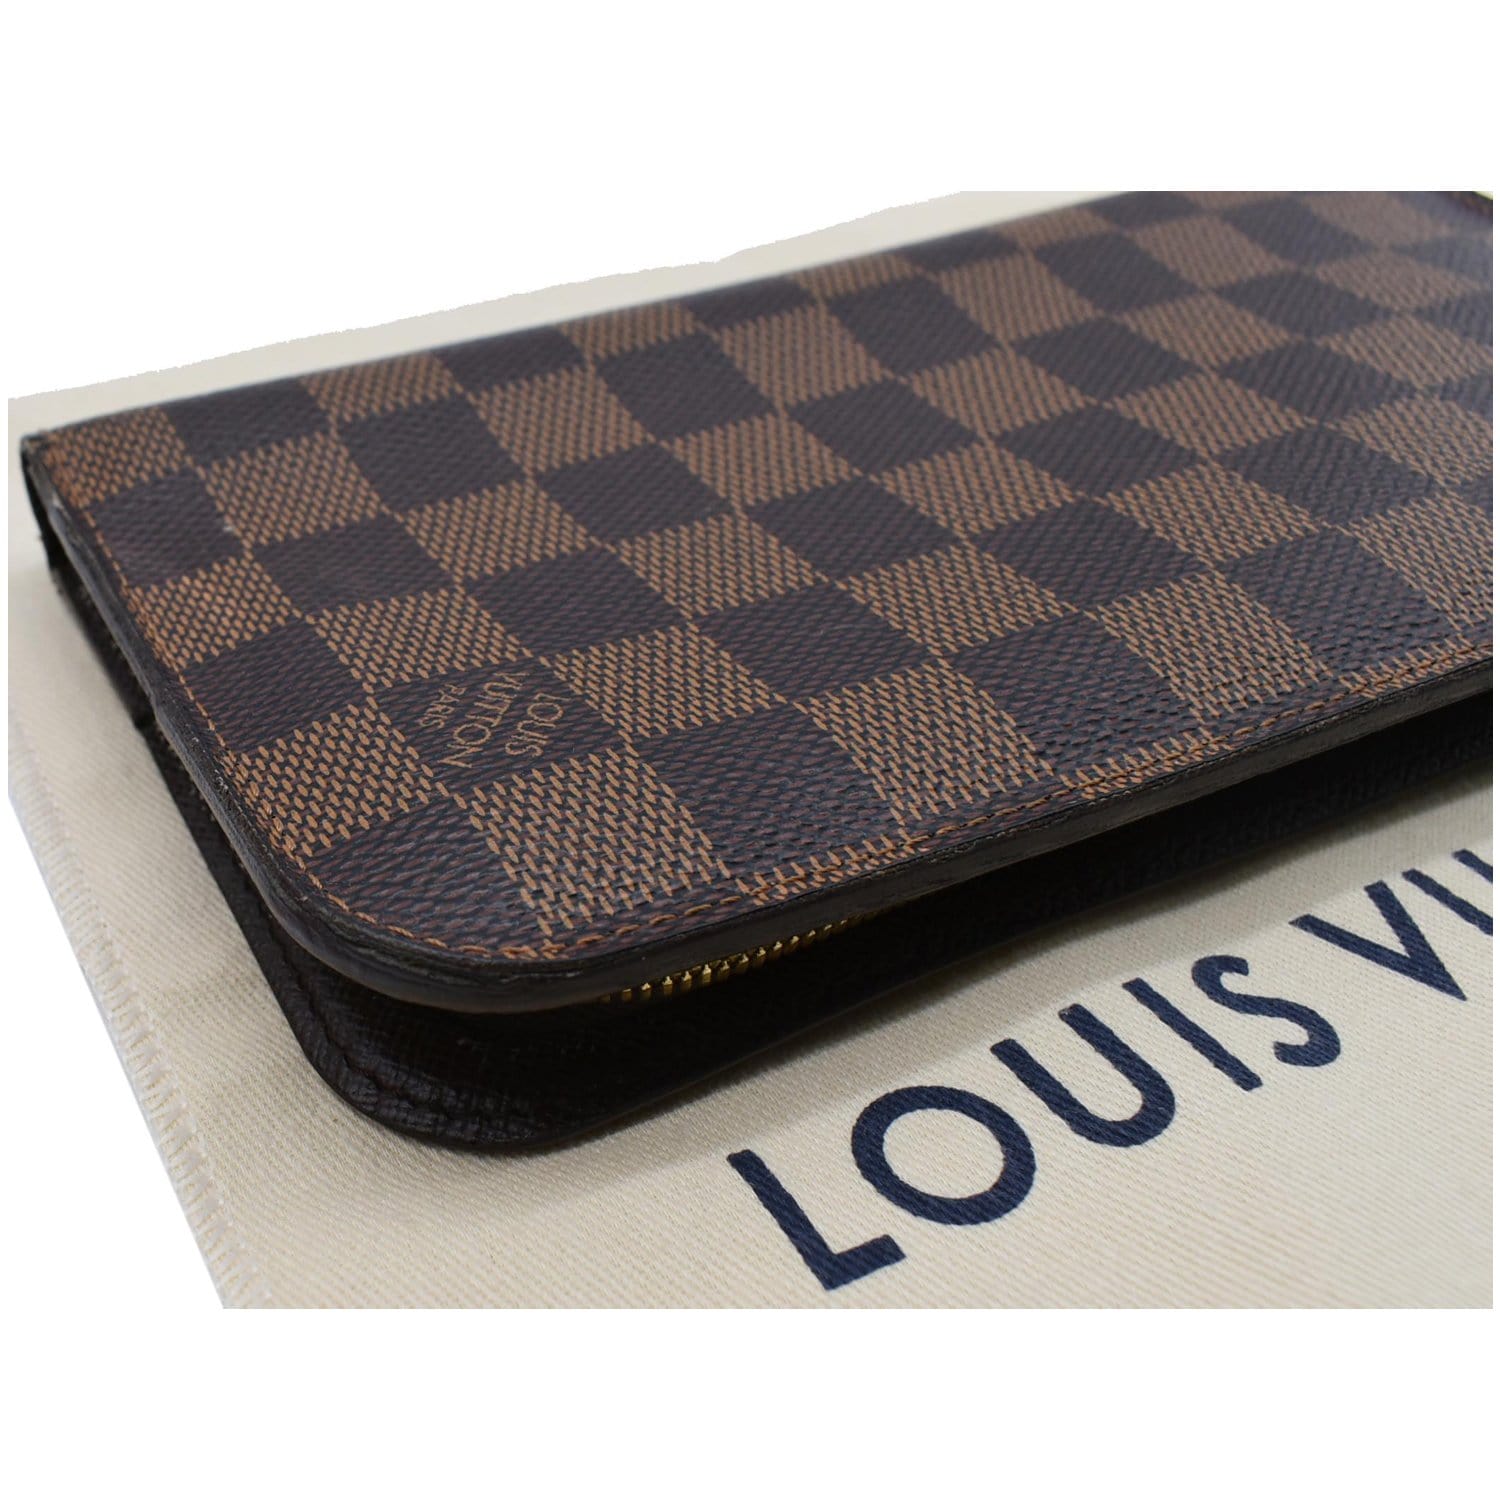 Louis Vuitton Insolite Wallet (damier Ebene) Review!